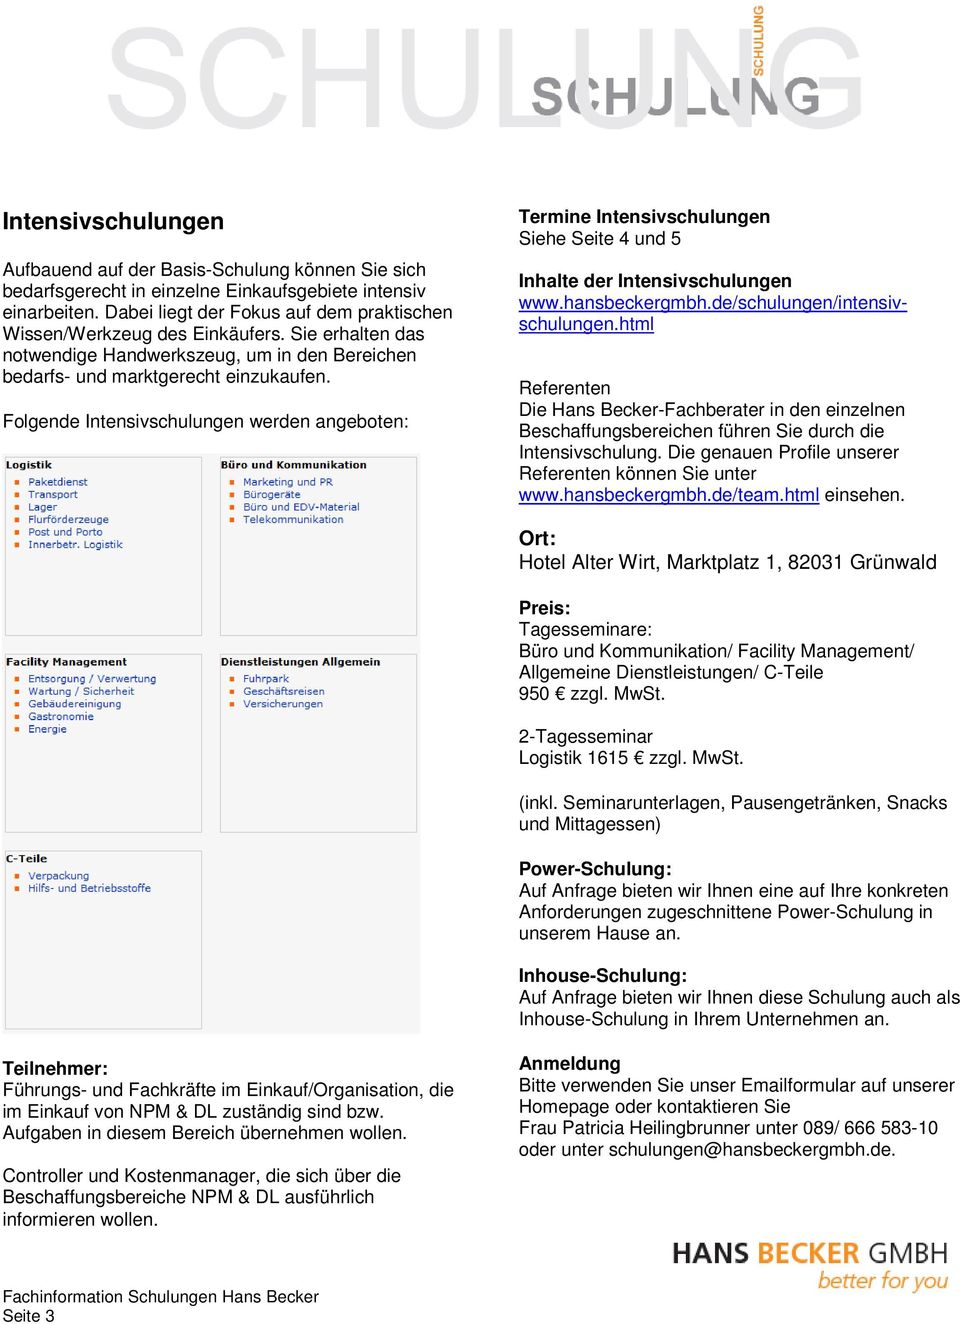 Folgende Intensivschulungen werden angeboten: Termine Intensivschulungen Siehe Seite 4 und 5 Inhalte der Intensivschulungen www.hansbeckergmbh.de/schulungen/intensivschulungen.